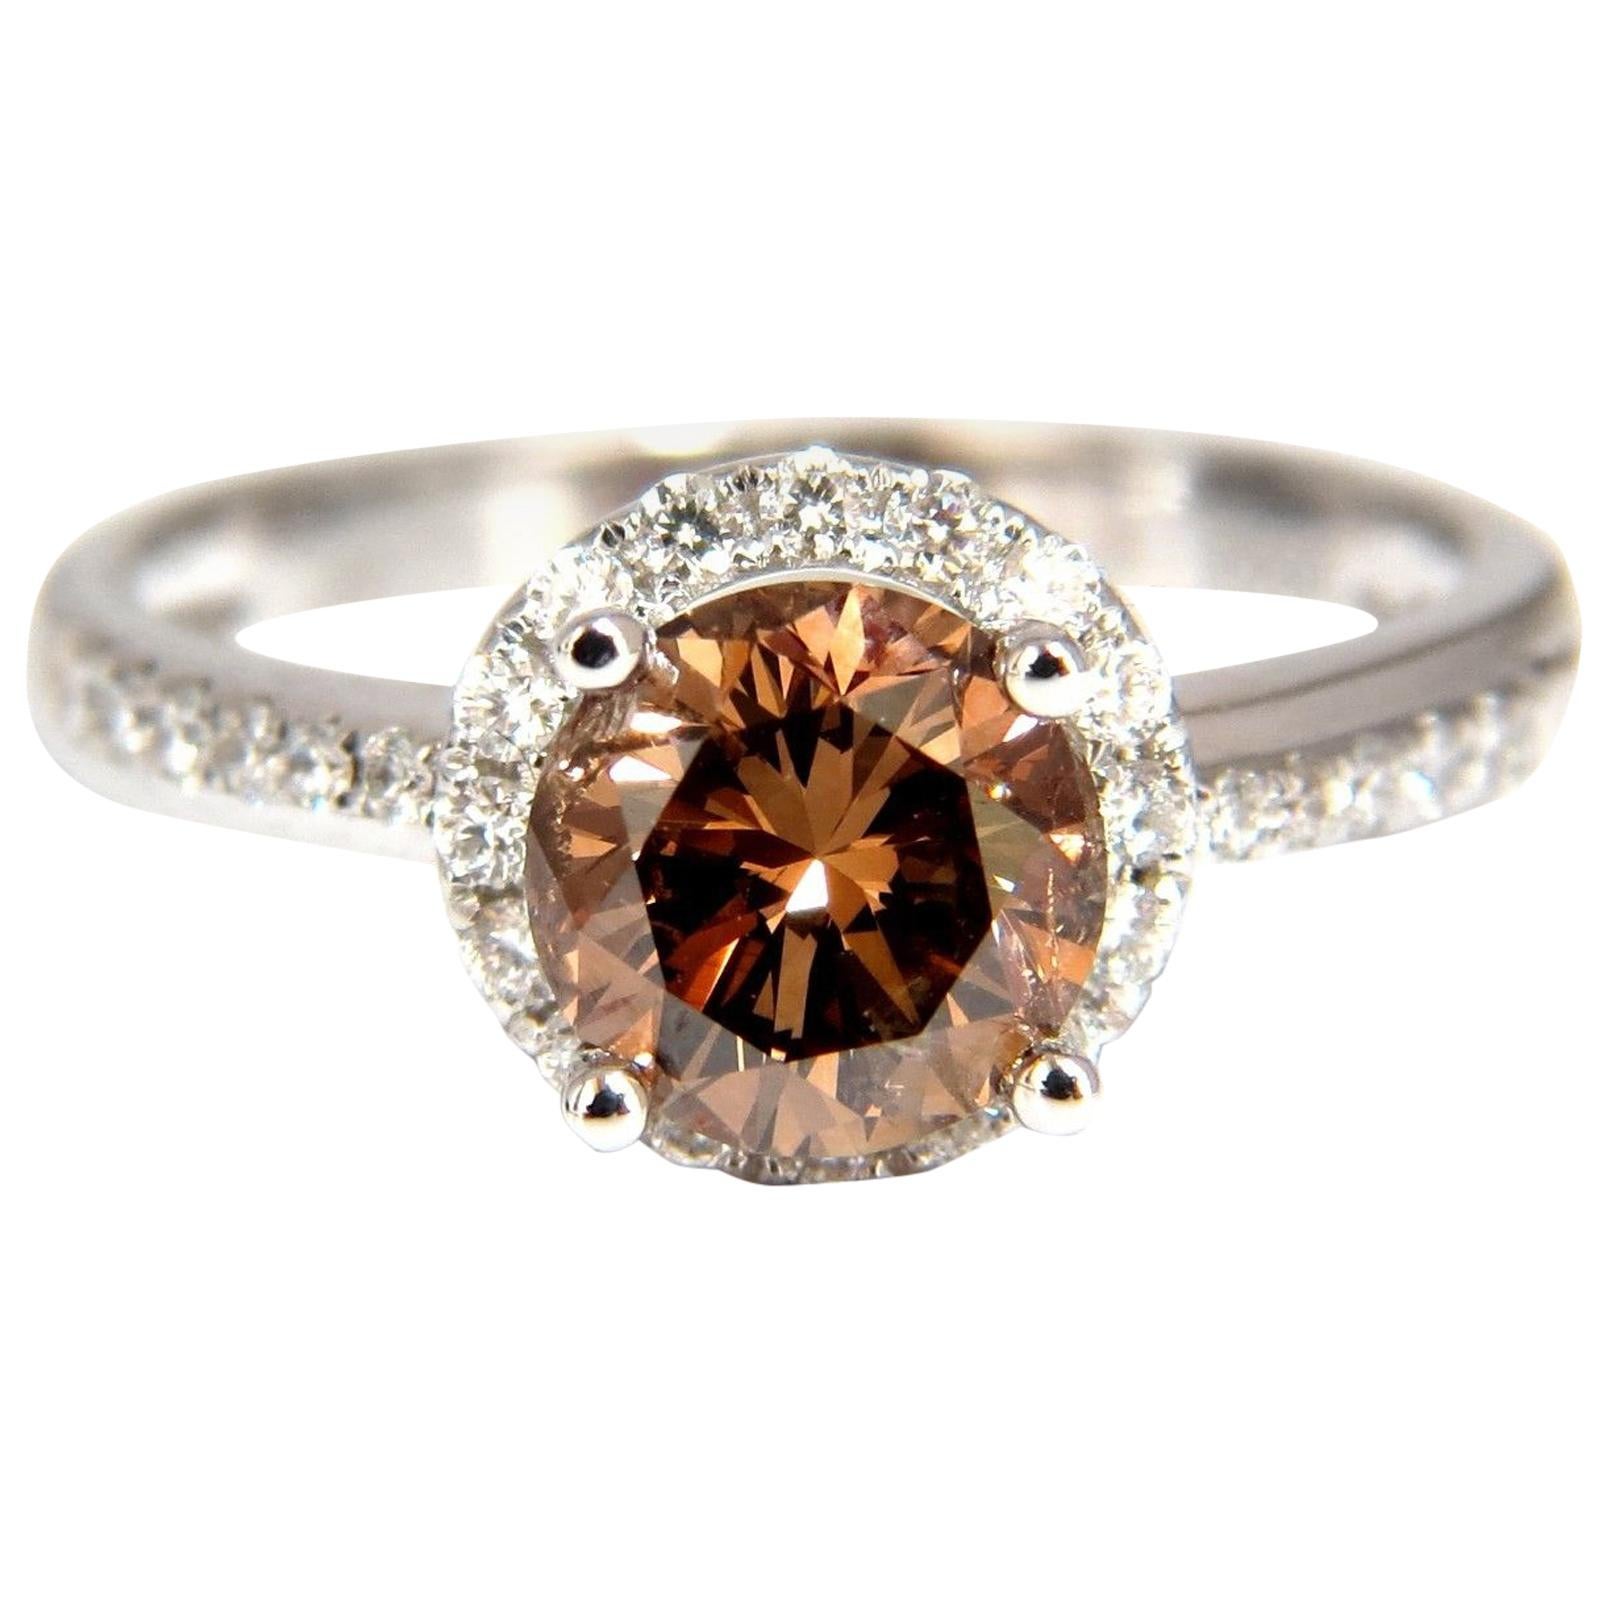 1.78 Carat Natural Fancy Vivid Orange Brown Diamond Ring 18 Karat